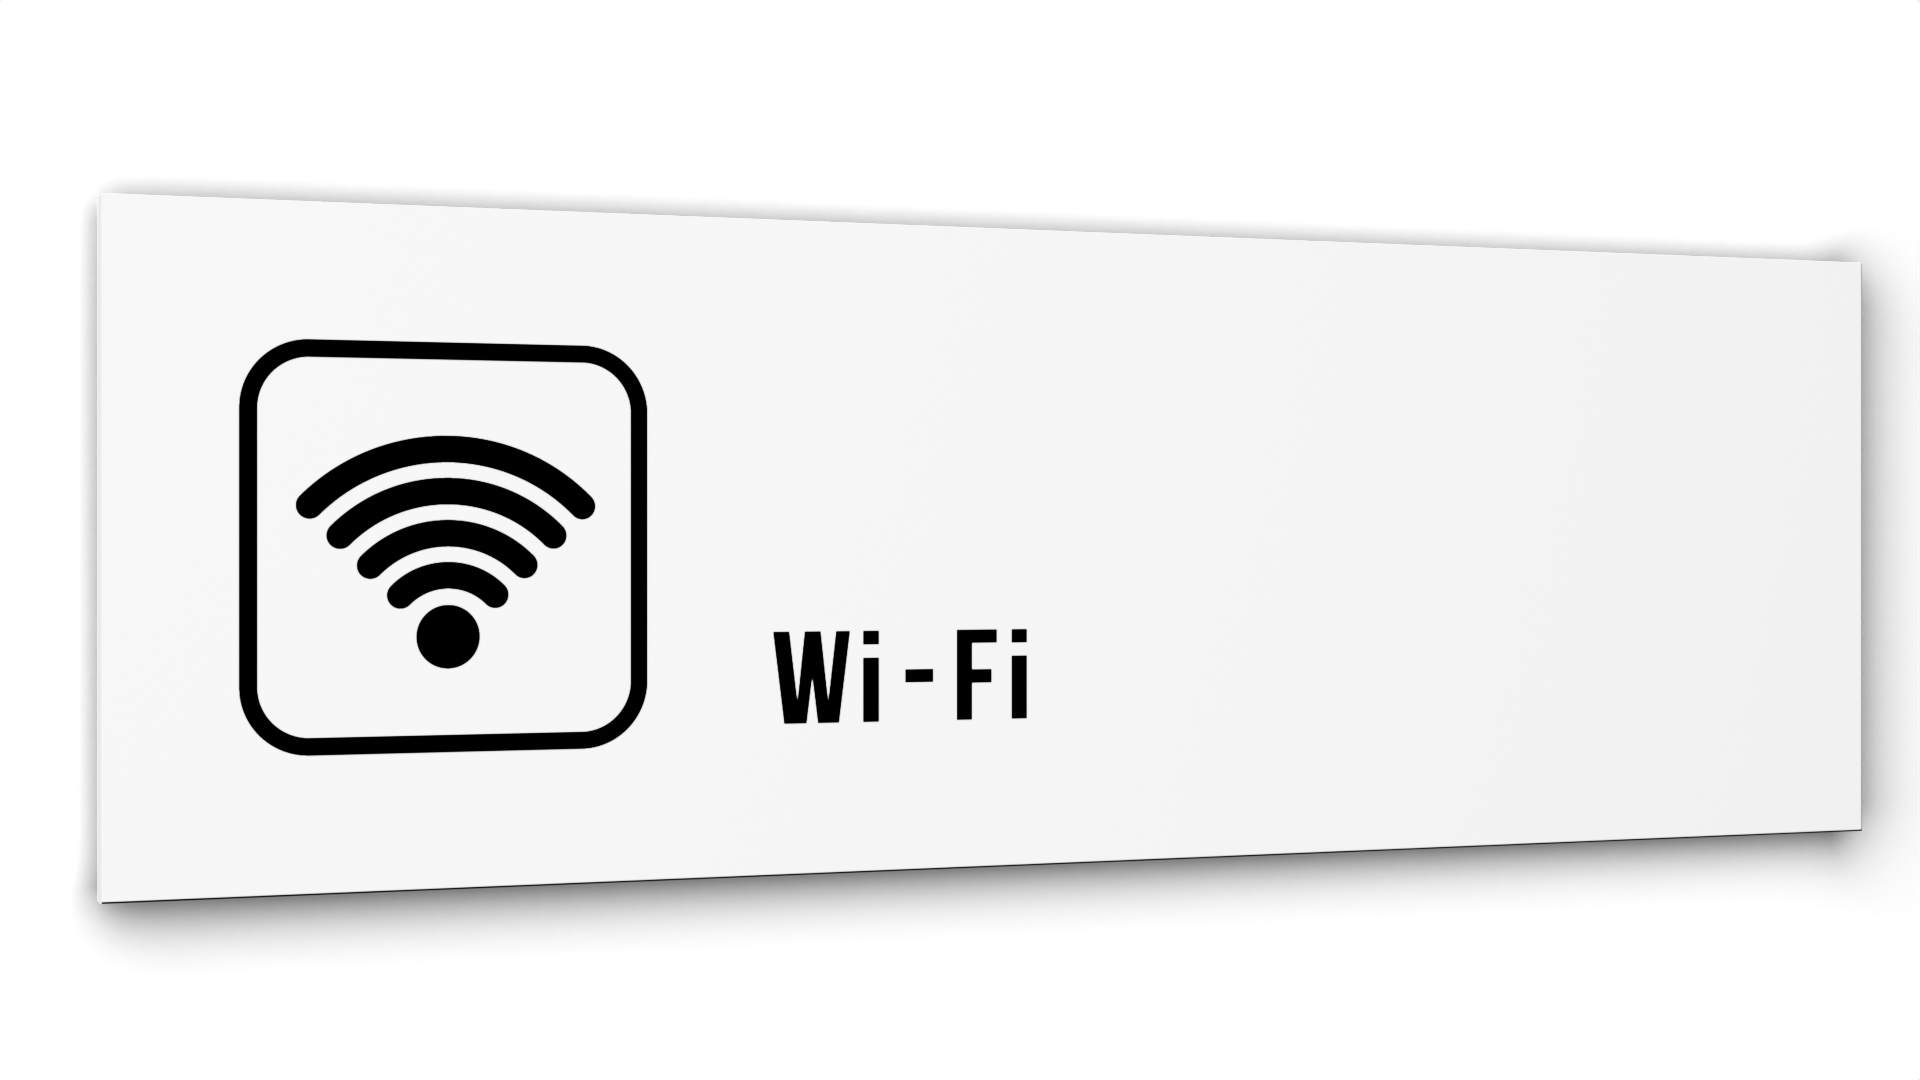 Табличка Wi-Fi, Белая глянцевая, 30 см х 10 см гейзер для ванны сорбет манго маракуйя 120г кафе красоты